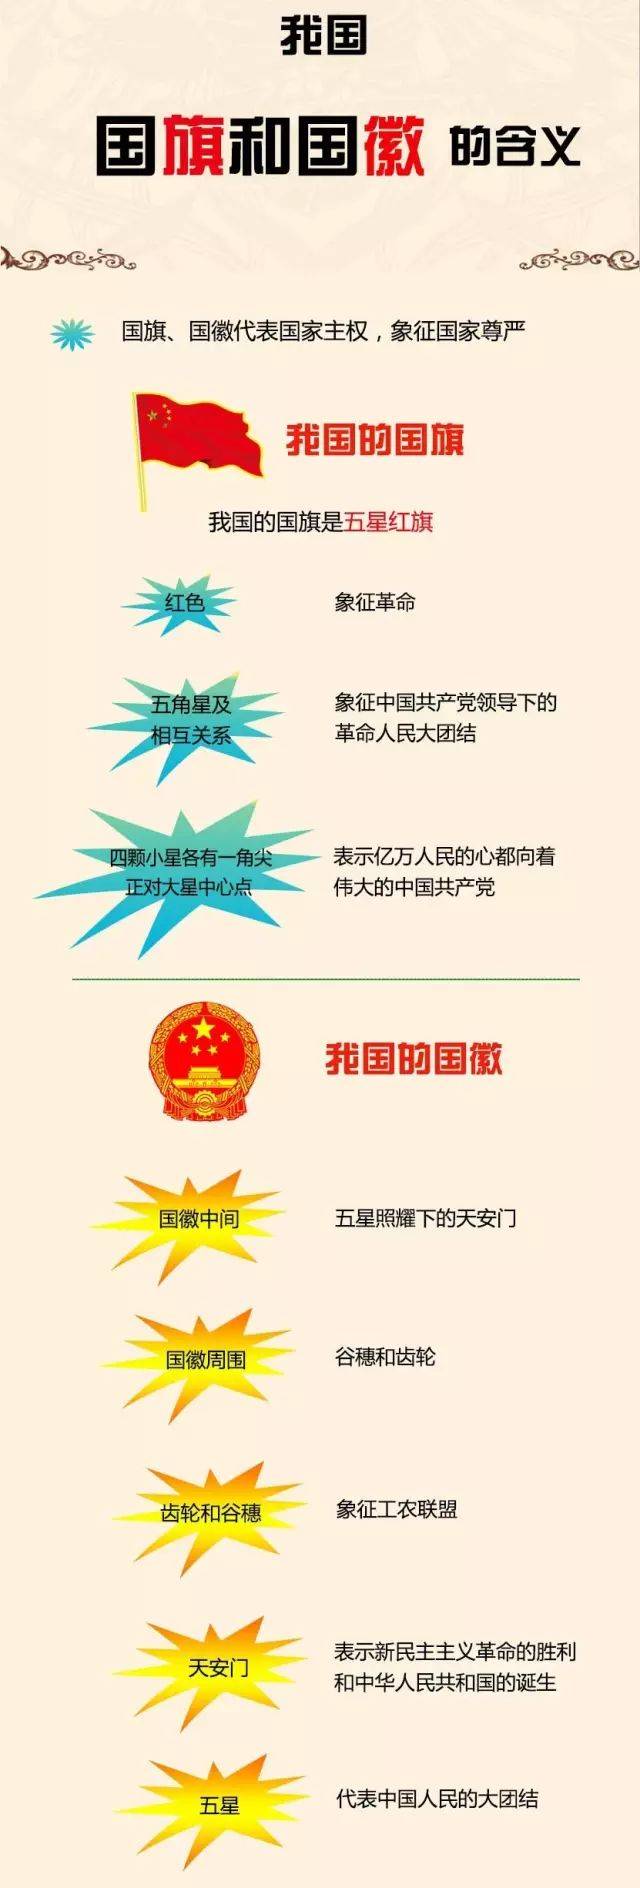 中华人民共和国国旗和国徽